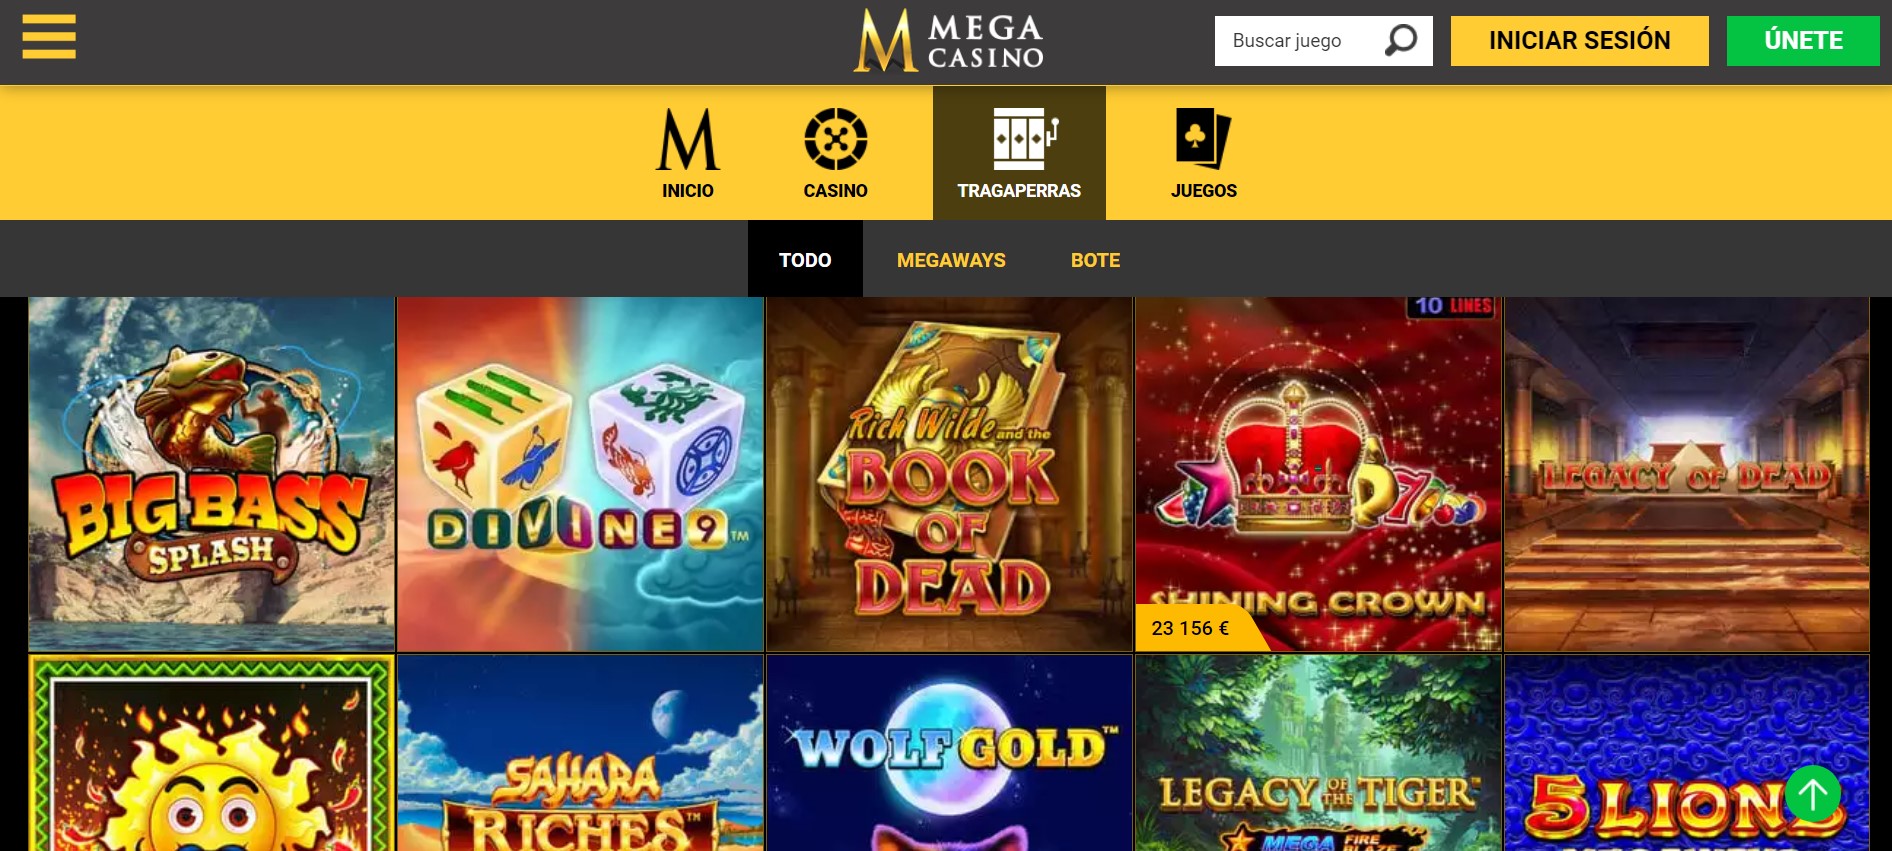 Tipos de juegos en Mega Casino